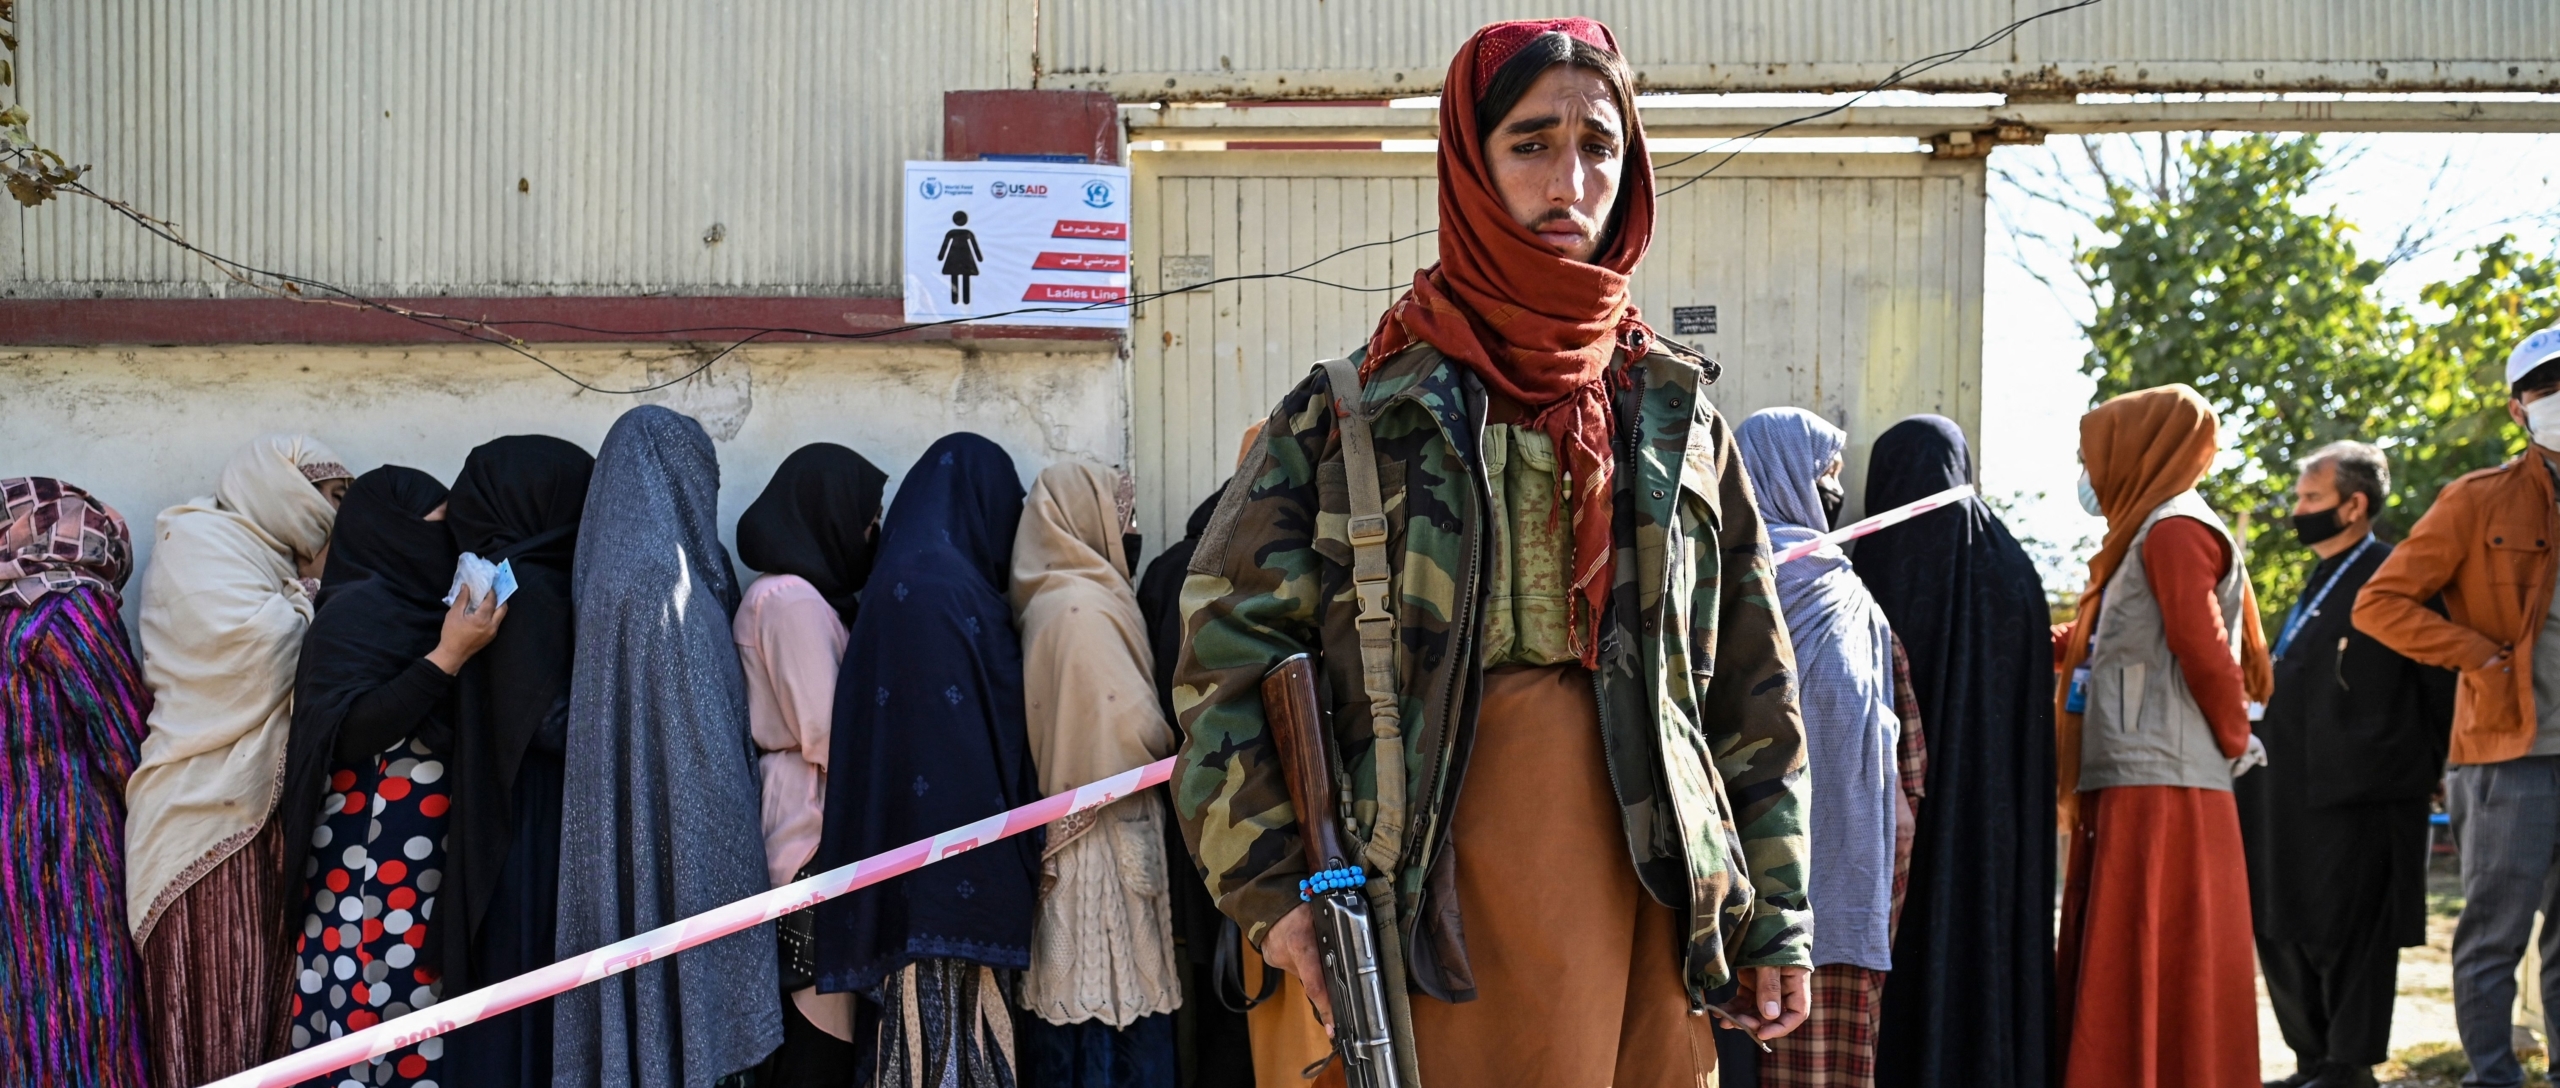 Afganistán Las sobrevivientes de violencia de género, abandonadas tras la toma del poder por los talibanes - nueva investigación